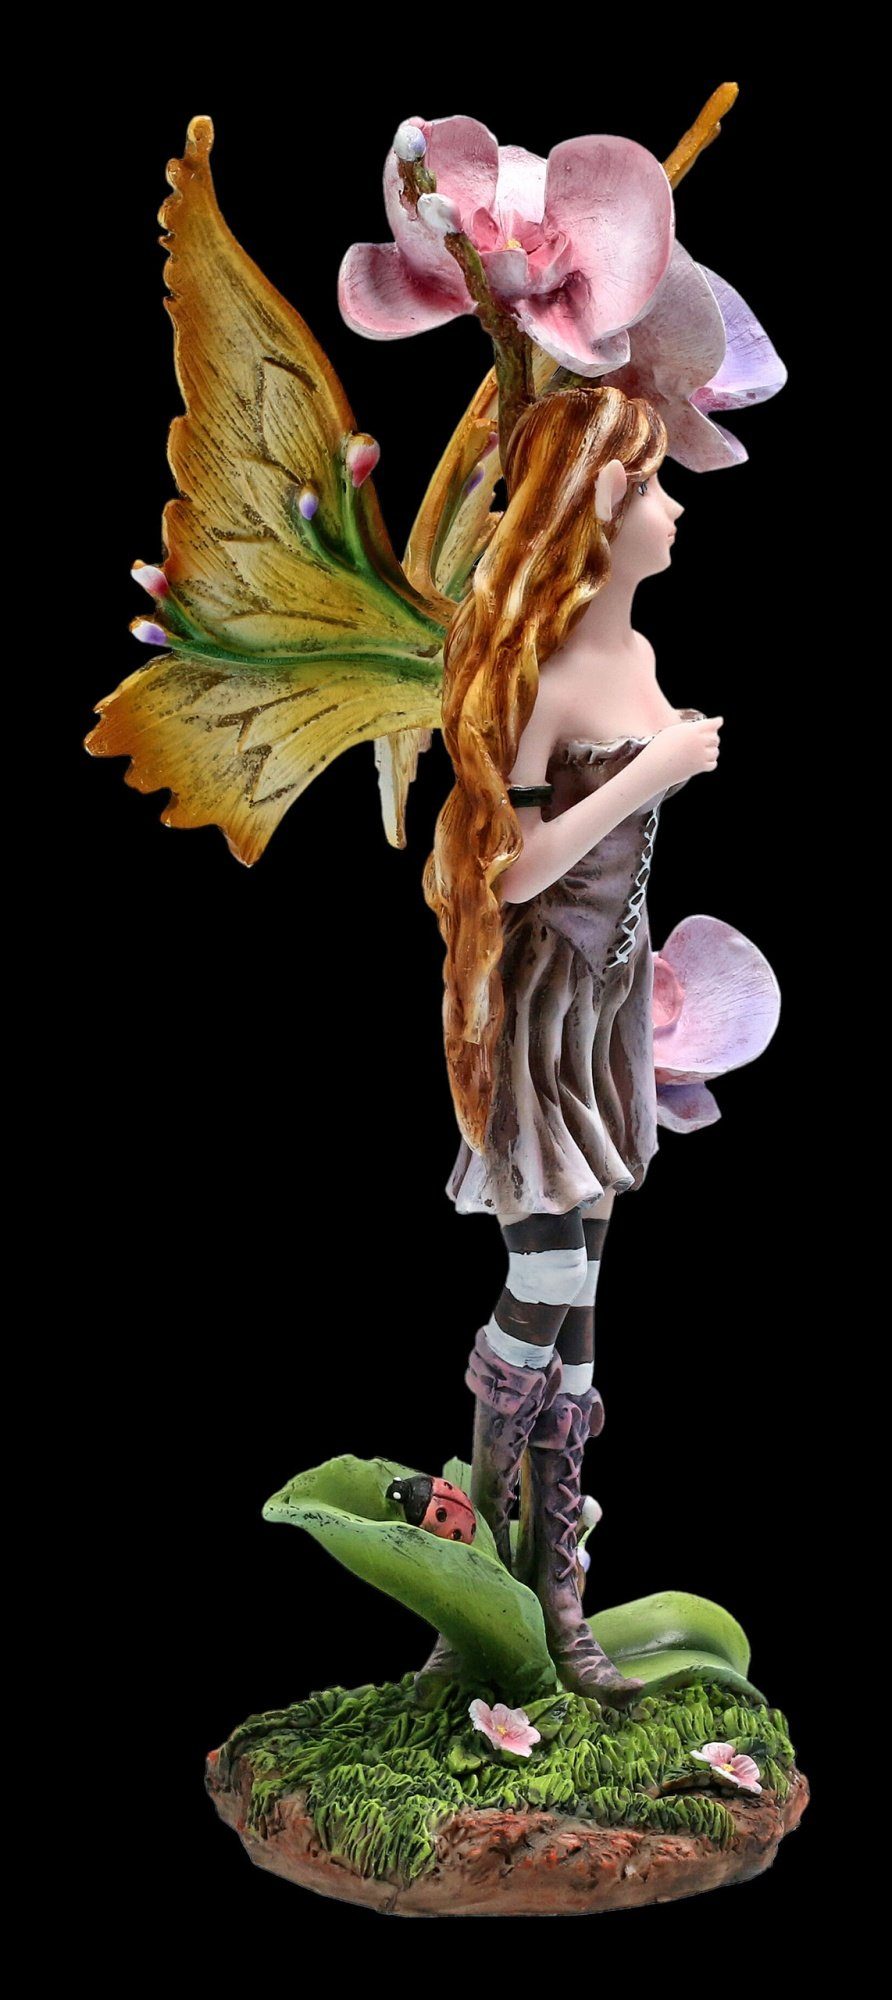 Fantasy Bluma Figur Fee - GmbH mit Dekofigur Shop Orchidee - Deko Figuren Elfen